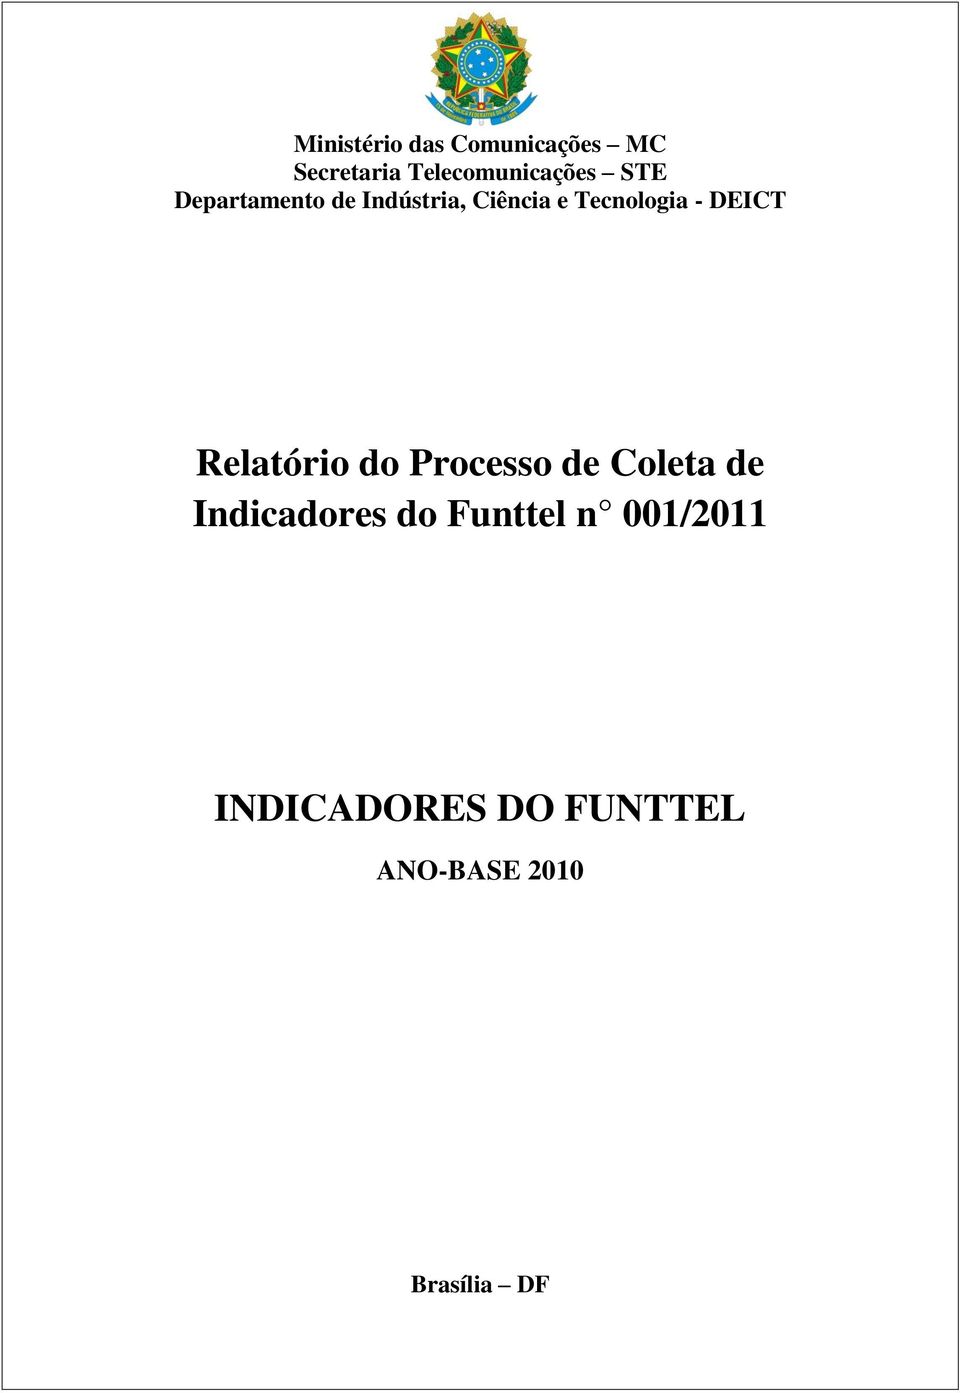 DEICT Relatório do Processo de Coleta de Indicadores do